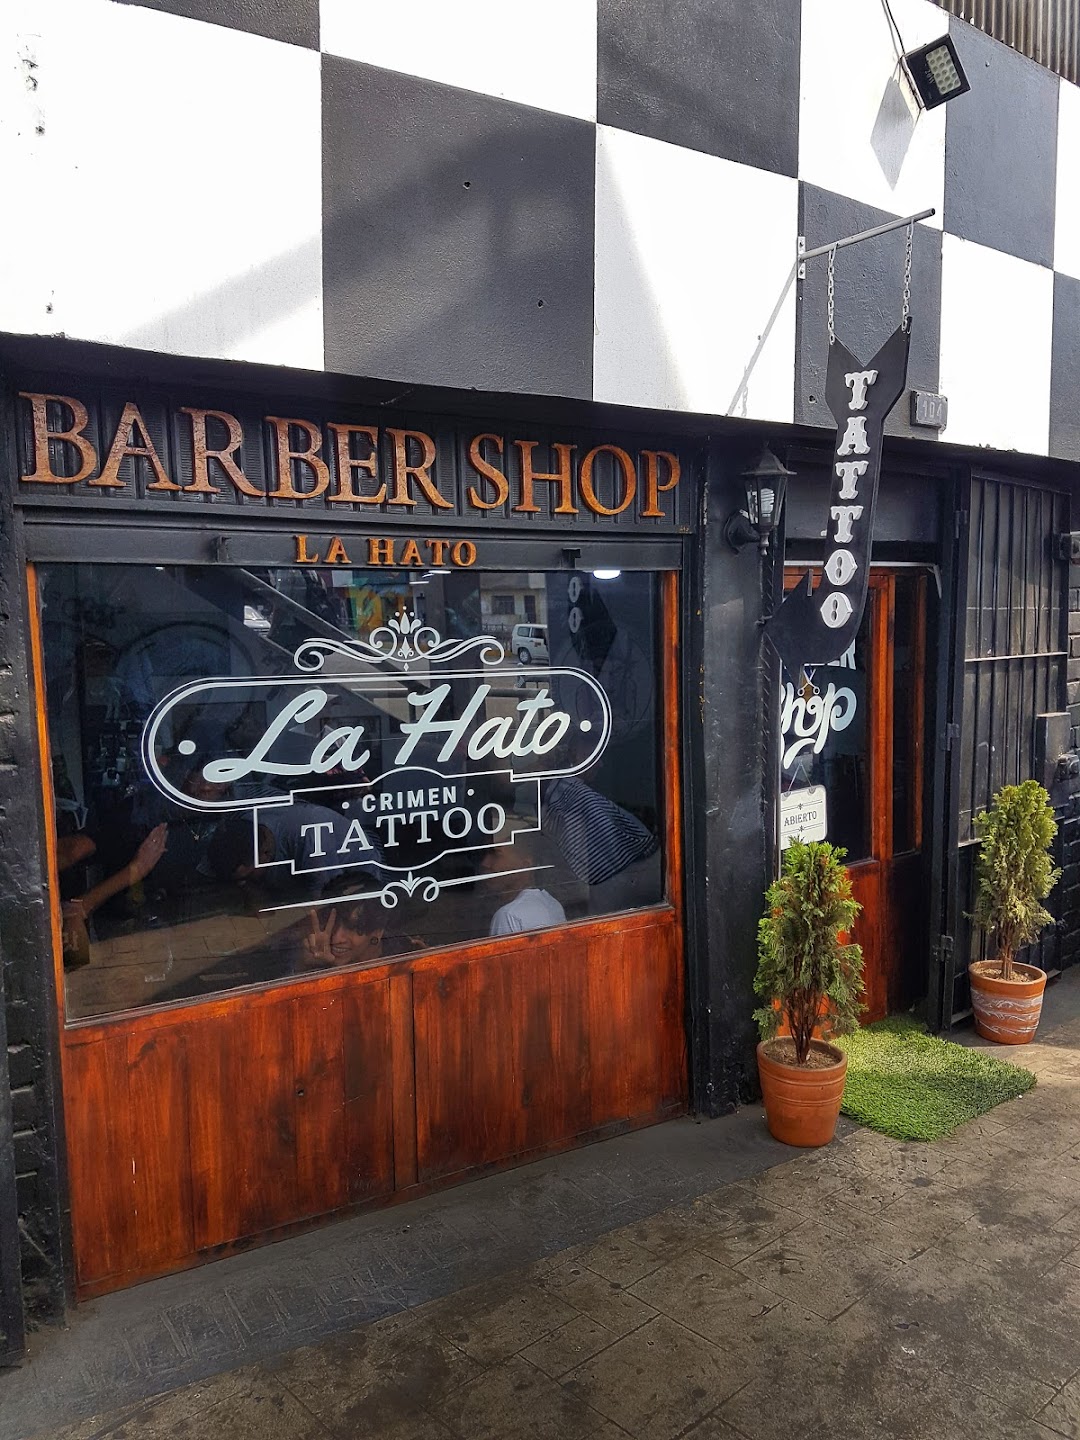 La hato barber shop